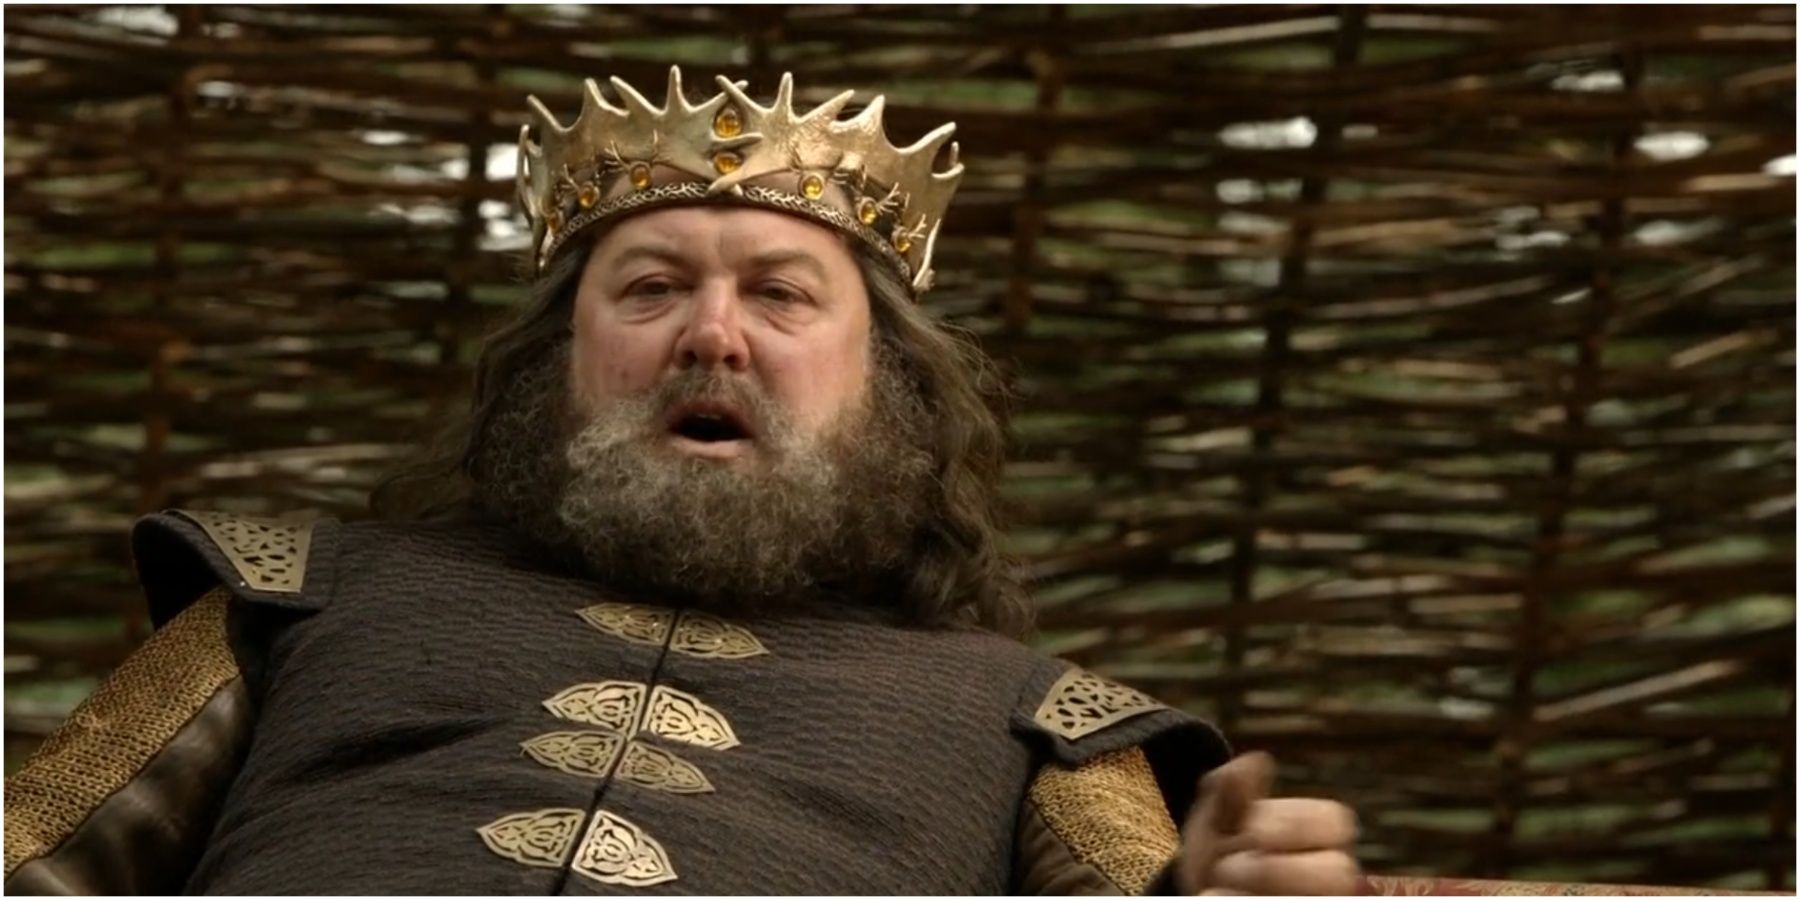 Robert I Baratheon in Game of Thrones.